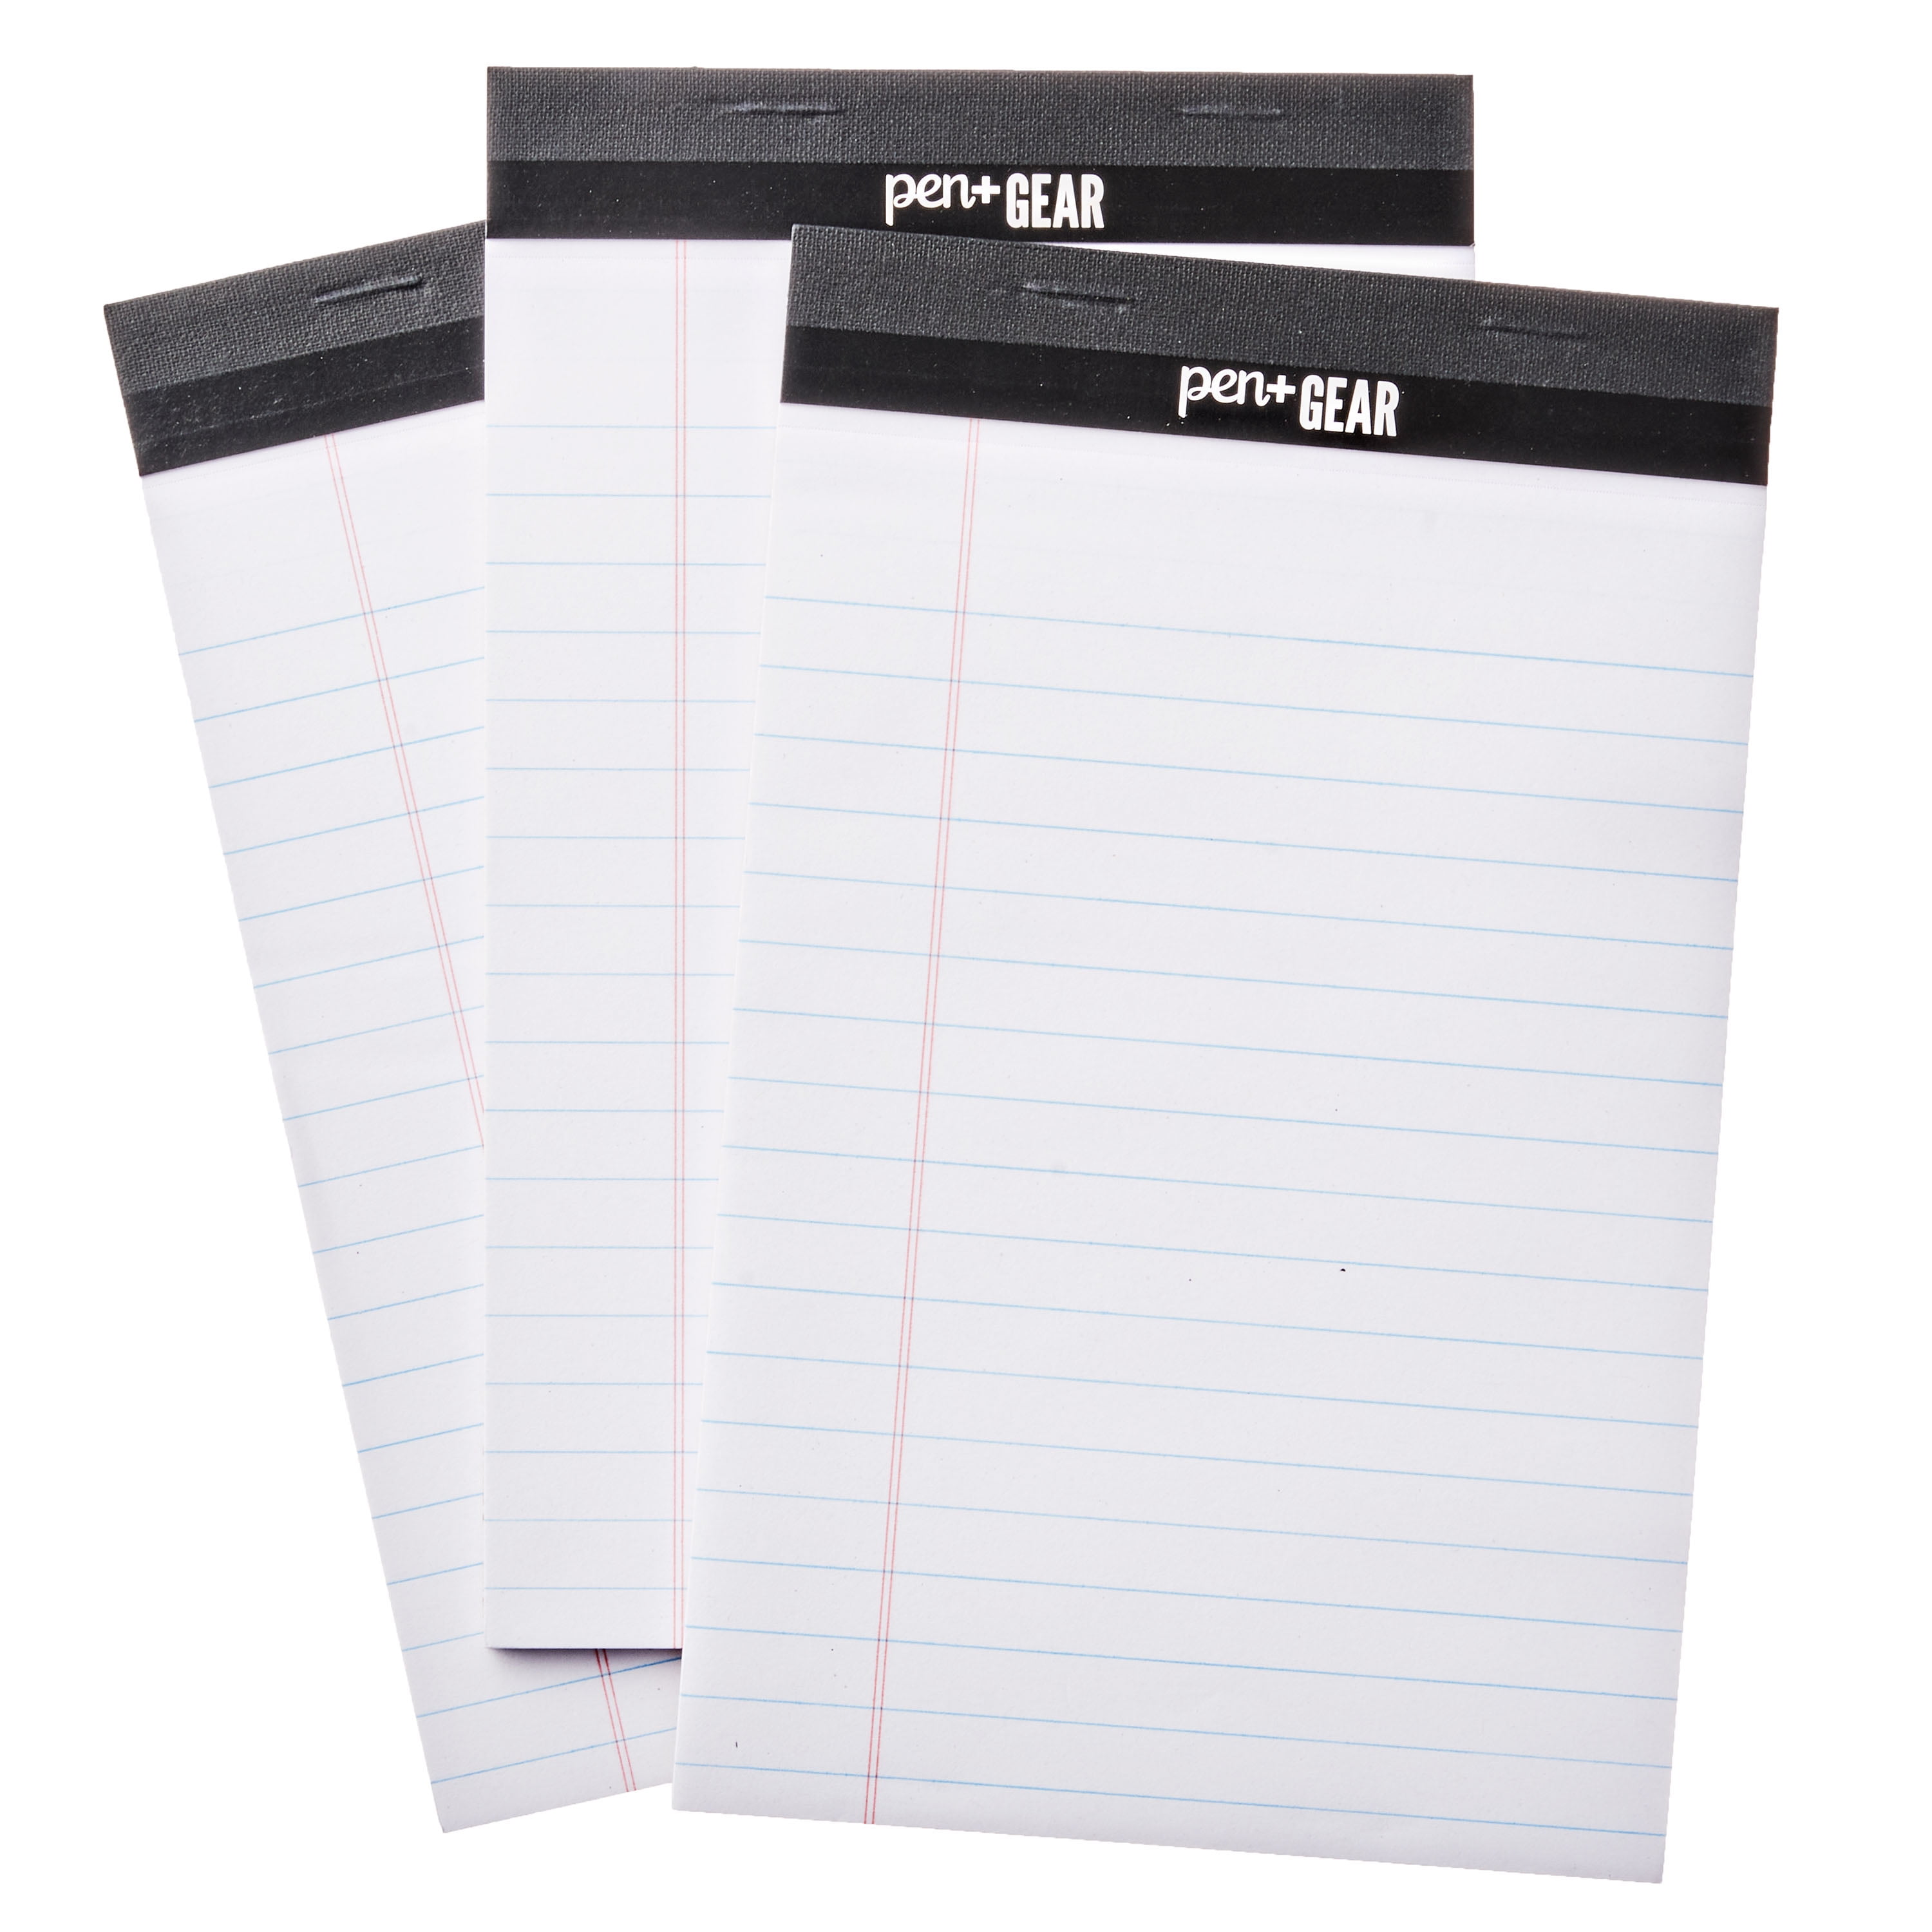 Pen + Gear Jr. Legal Pads, White Color Paper, 50 Sheets, 3 Count